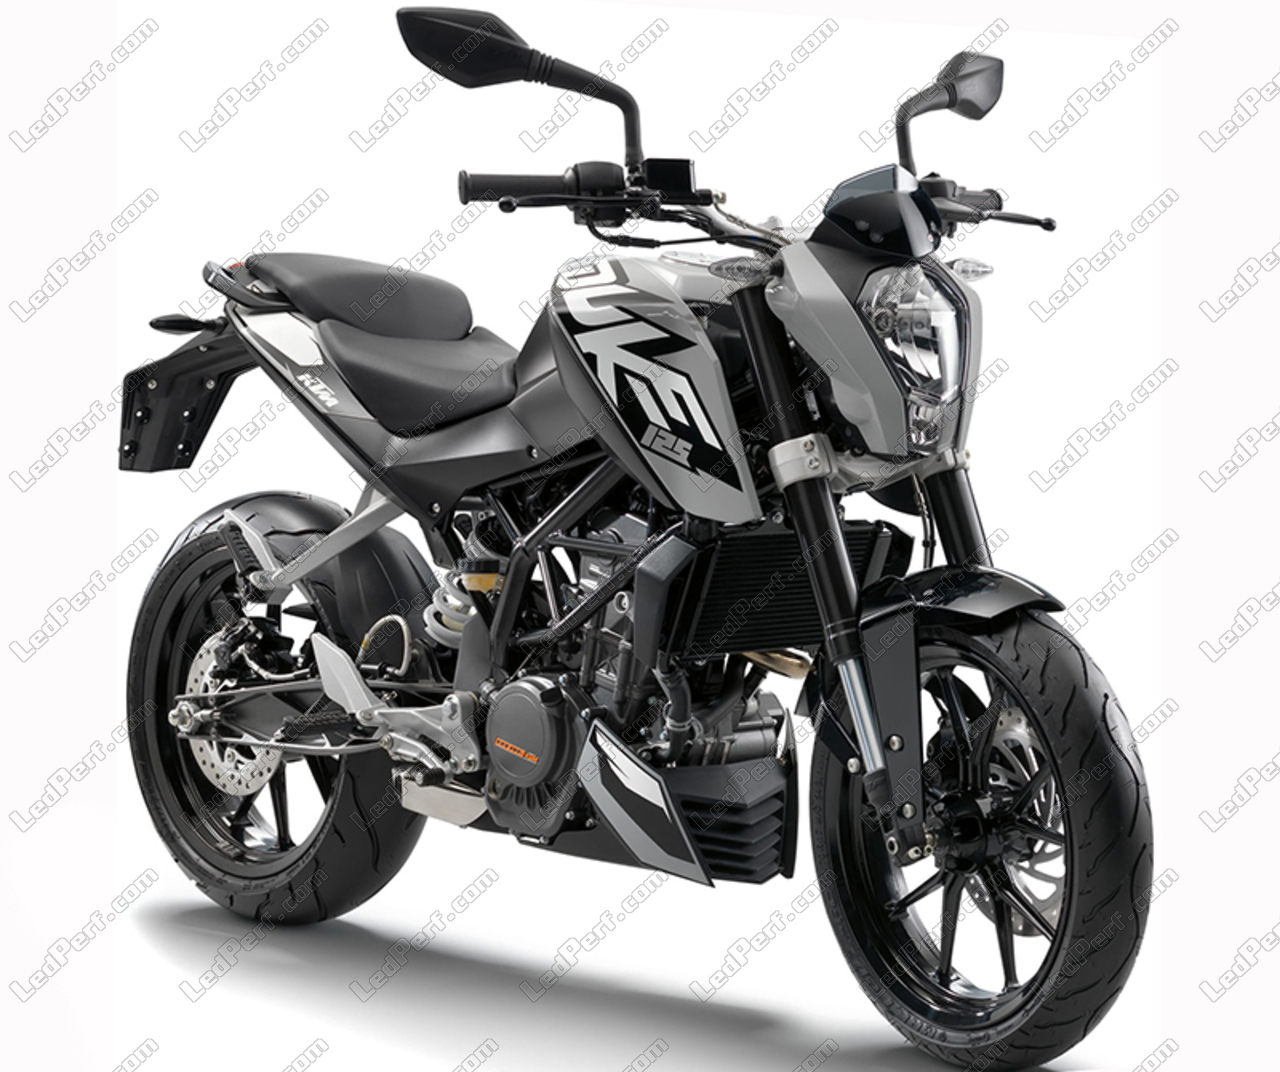 https://www.ledperf.us/images/models/ledperf.com/._1/additional-led-headlights-for-motorcycle-ktm-duke-125-long-range_69707.jpg